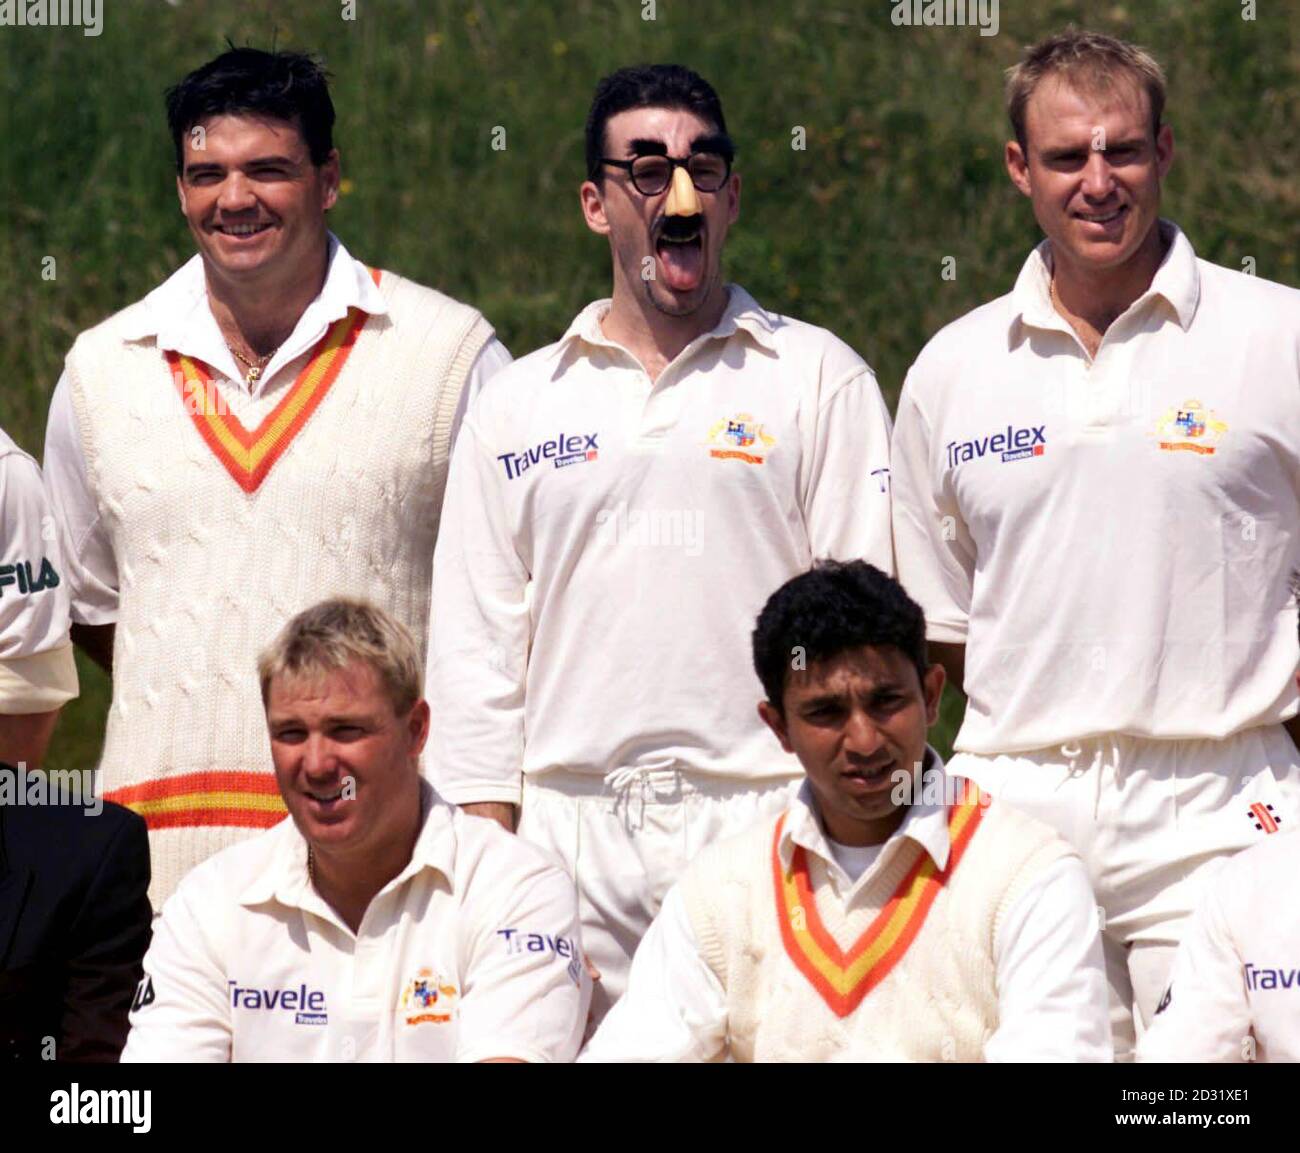 Le joueur australien de cricket Damian Fleming porte un masque de blague avant le début de son match contre MCC XI à Arundel. On trouve également sur la photo Joe Dawes (MCC, arrière gauche), Shane Warne (Australie, avant gauche), Matthew Hayden (Australie, arrière droit) et Azhar Mahmood (MCC, avant droit). Banque D'Images